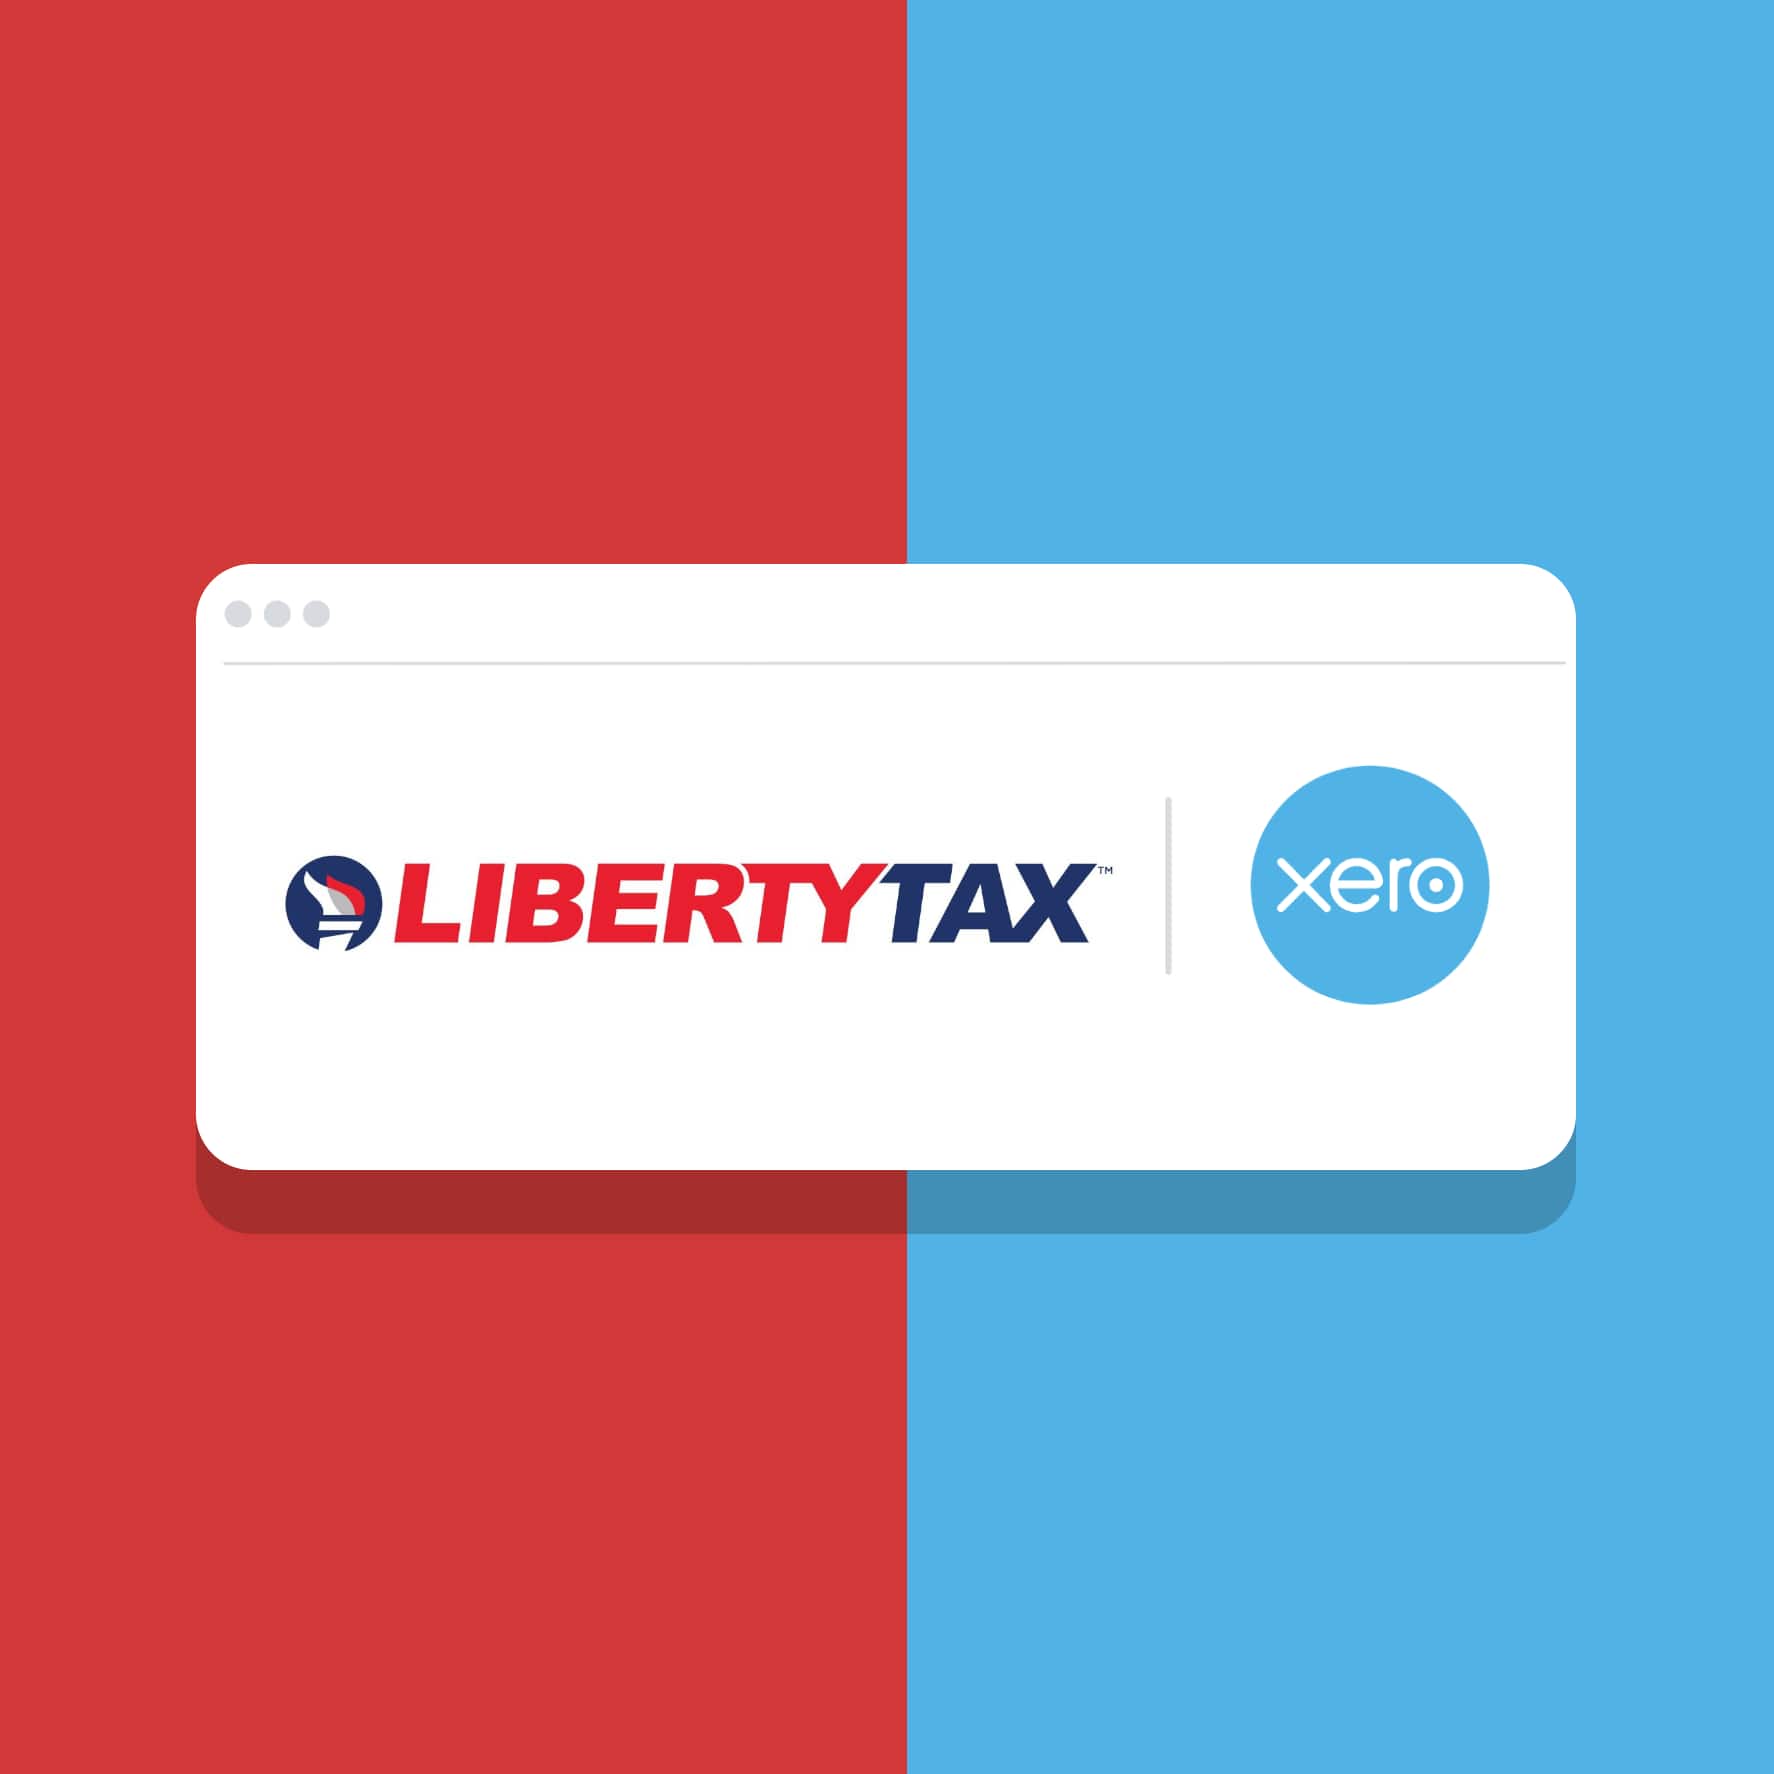 Liberty tax in partnership with Xero